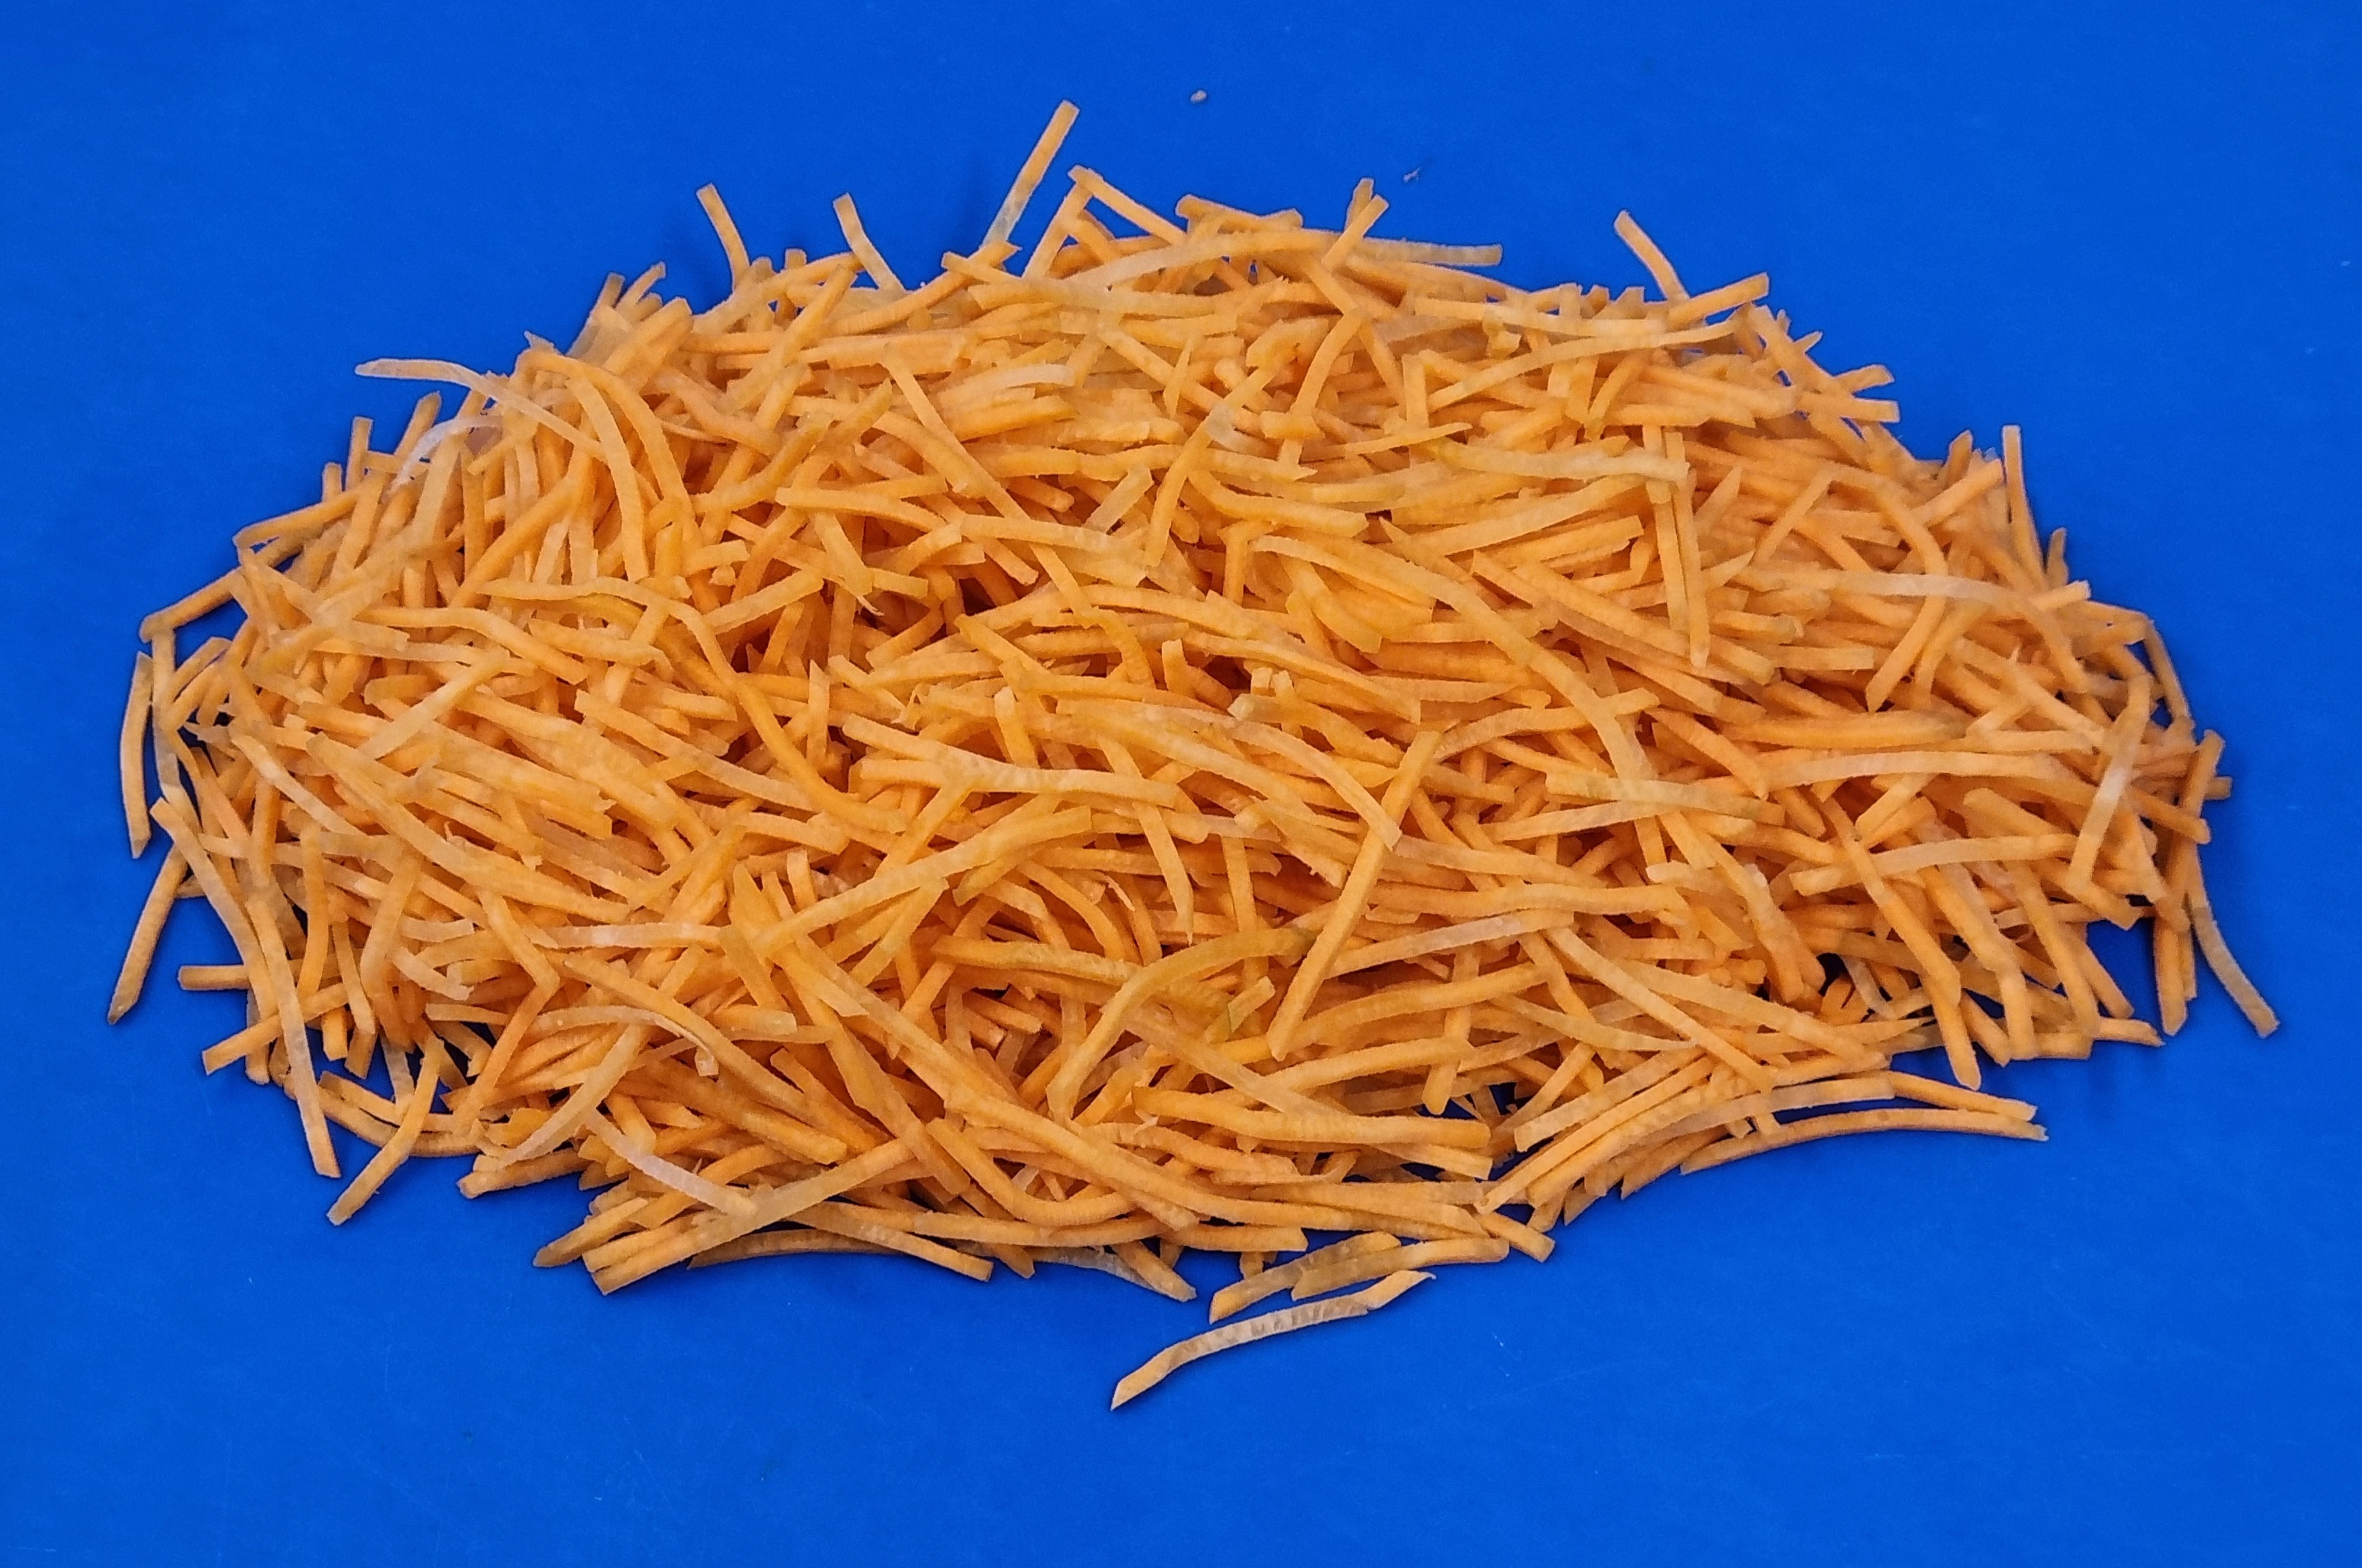 Winter wortel oranje julienne per kilo